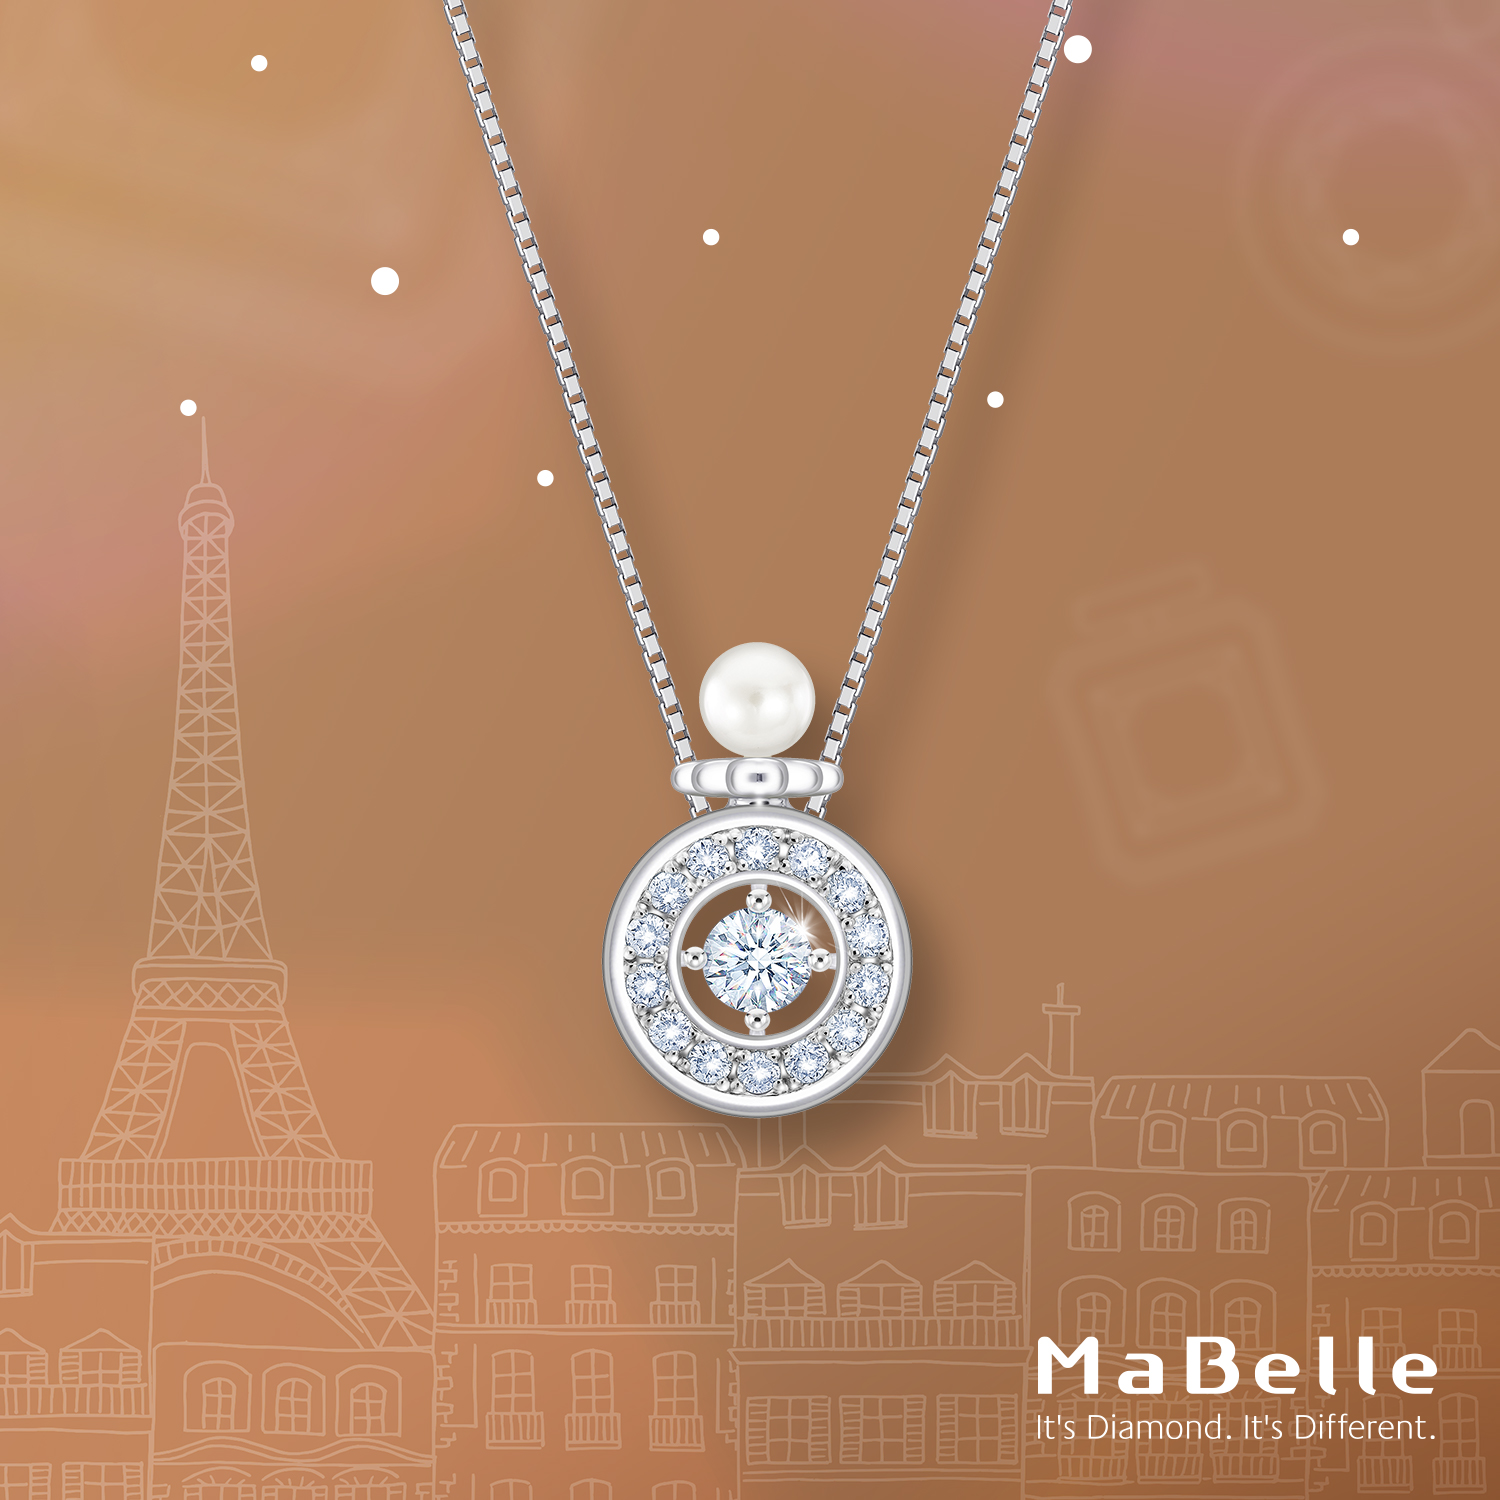 【#心肝寶貝 】珍珠的光芒為圓形香水瓶添上一抹柔美，以深情擁抱一顆閃爍的心。